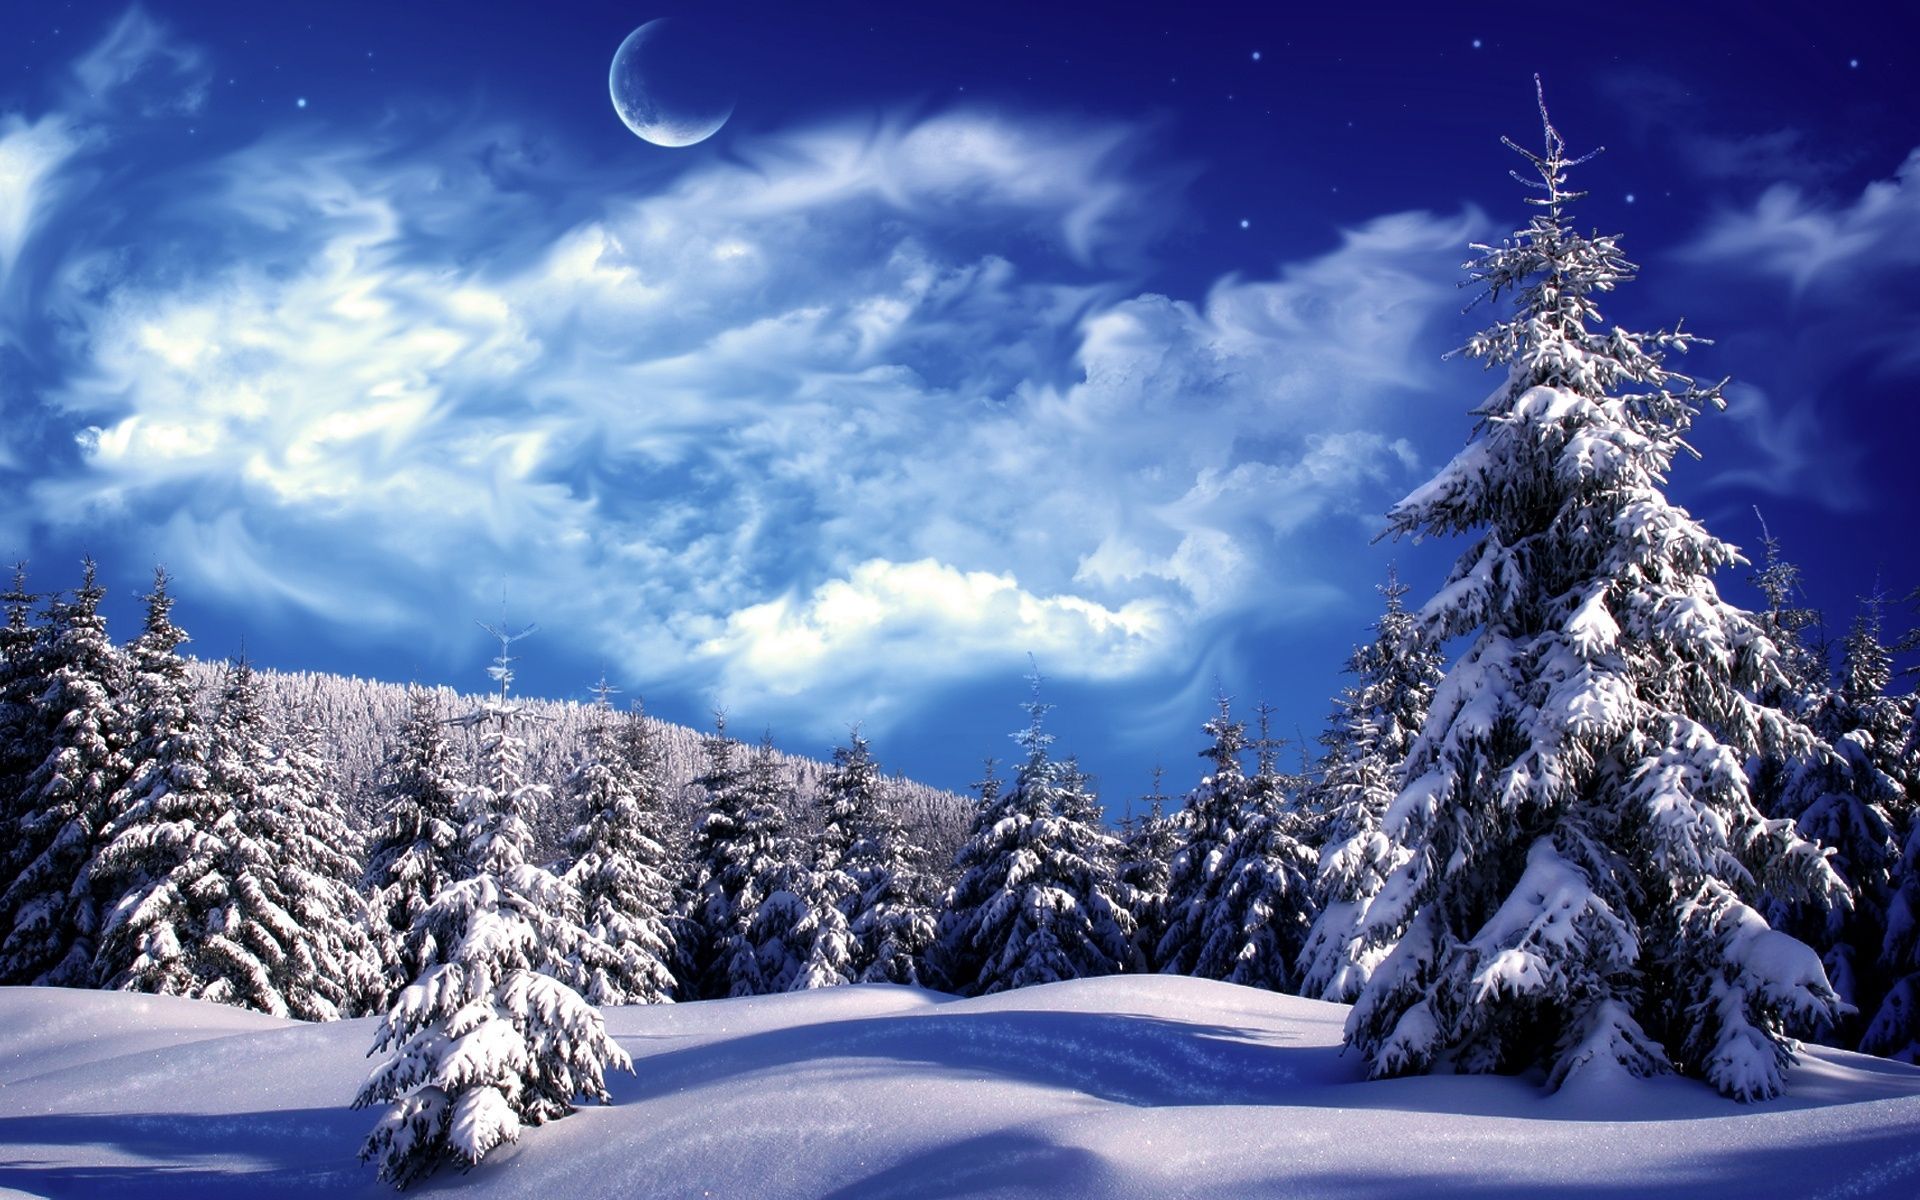 Winter scenery, Winter landscape, Winter snow wallpaper